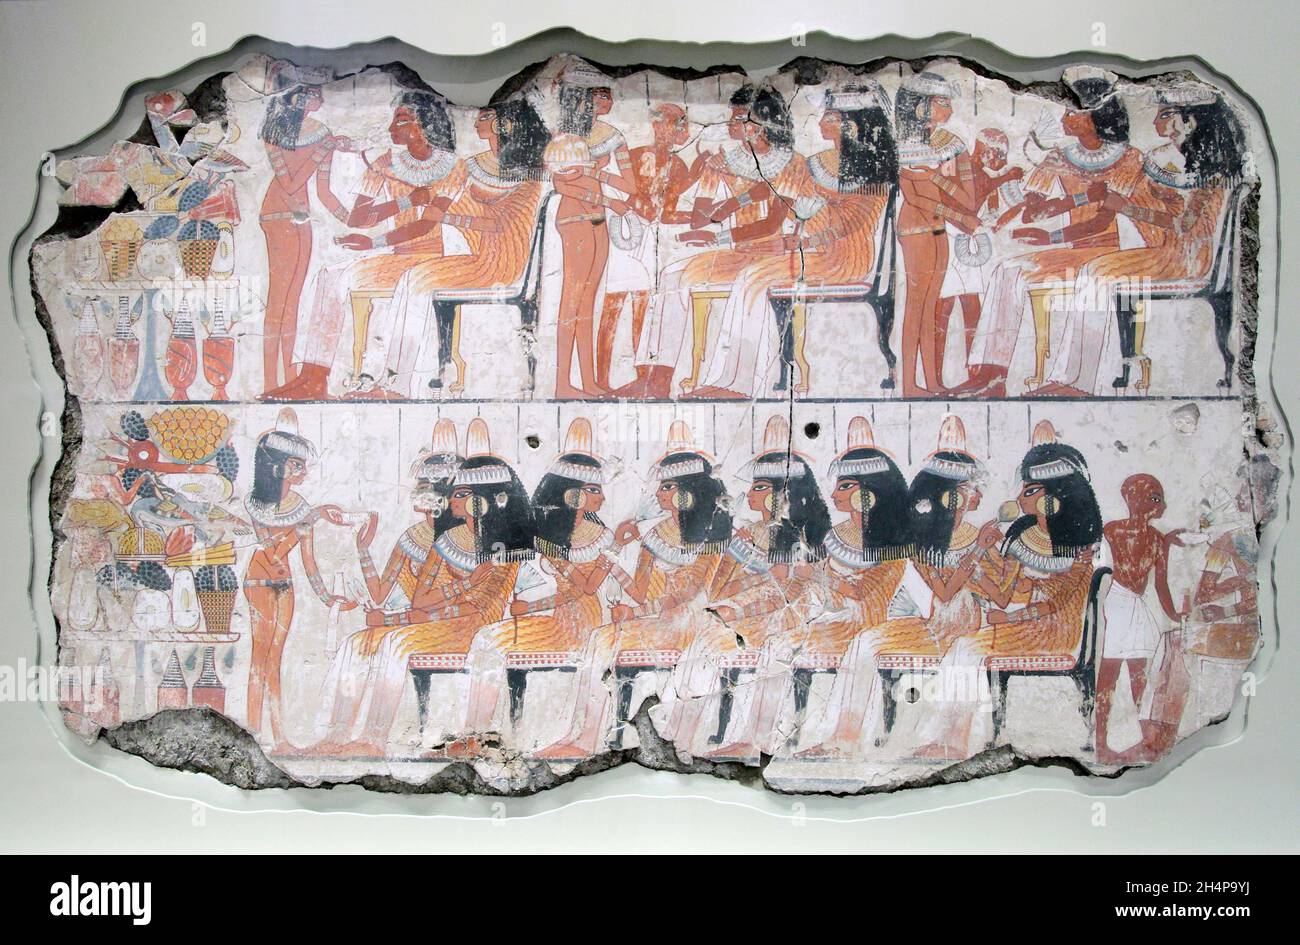 Nebamun era un funzionario di rango medio nel Tempio di Tebe, in Egitto, intorno al 1350 a.C. Molto ordinario, ma questi stupendi dipinti sepolcrali della sua vita fr Foto Stock